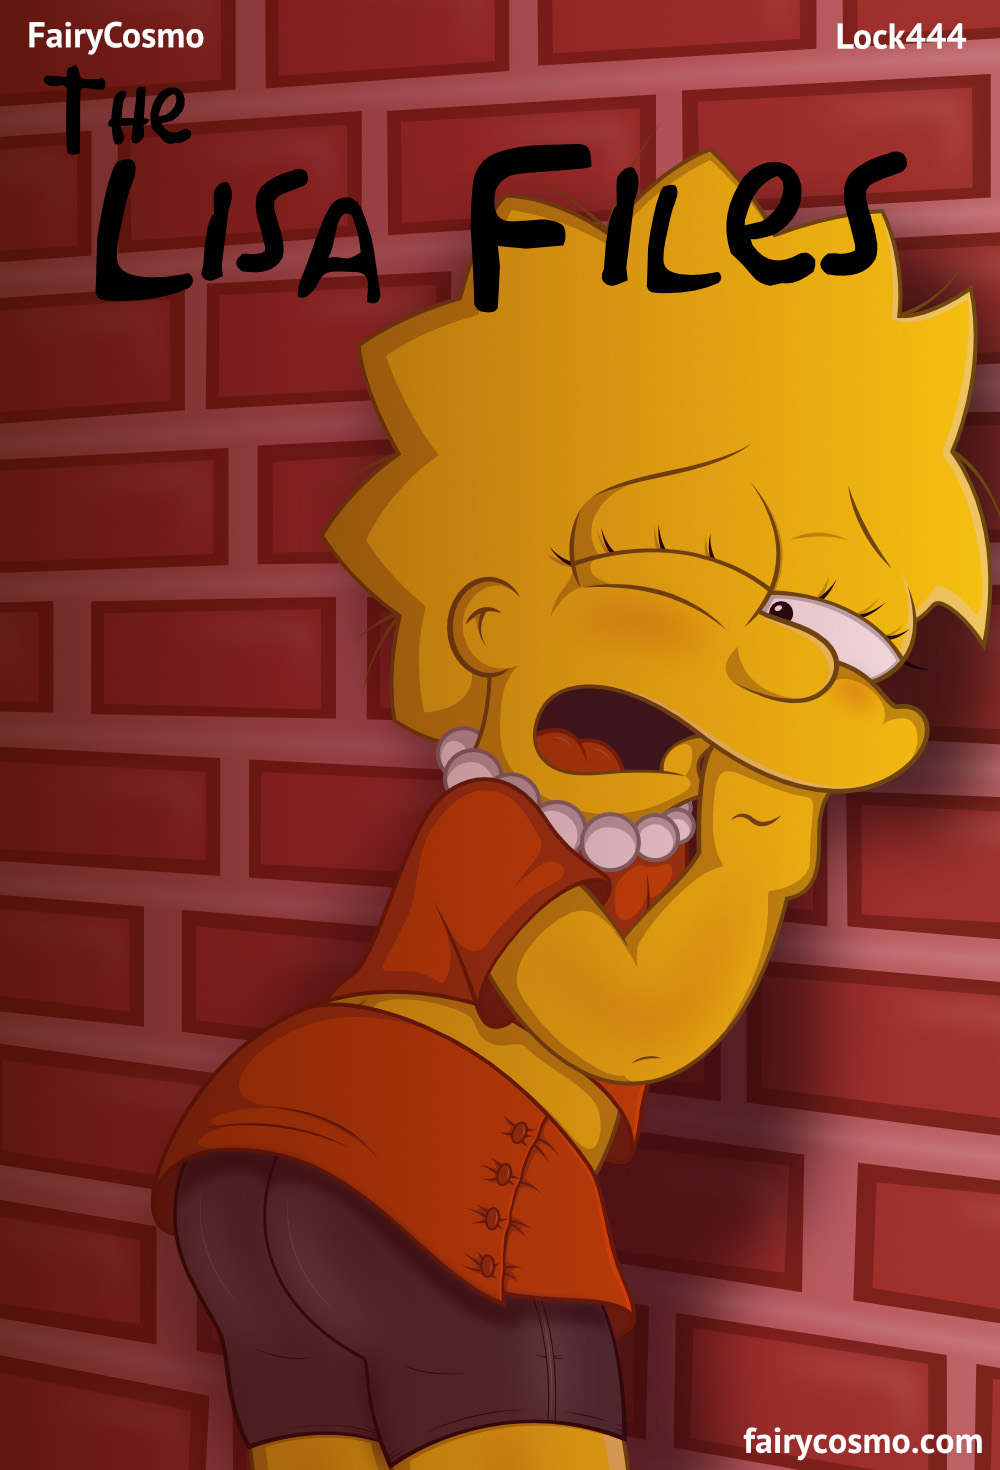 The LISA FILES